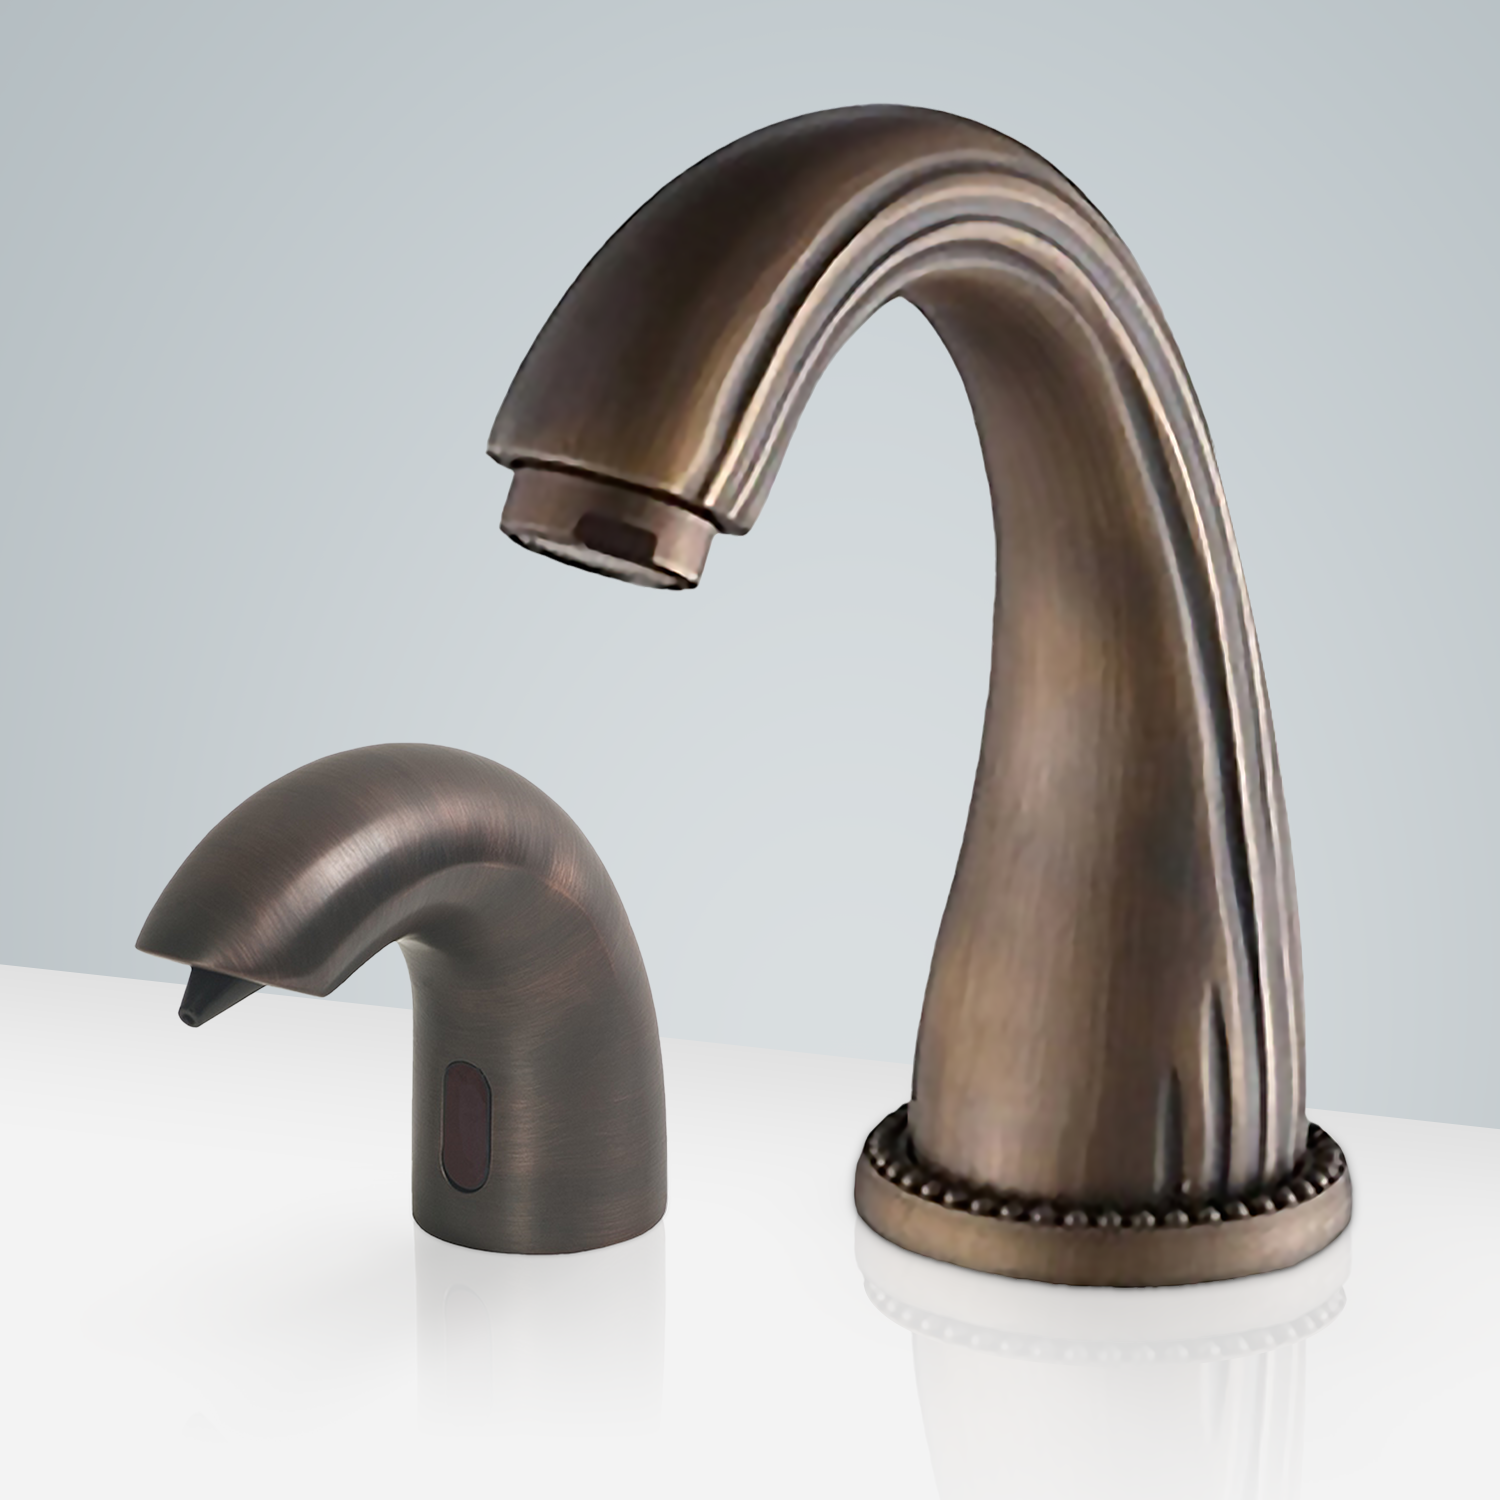  Fontana Creteil Motion Sensor Faucet & Automatic Soap Dispenser For Restrooms In Antique Bronze Finish